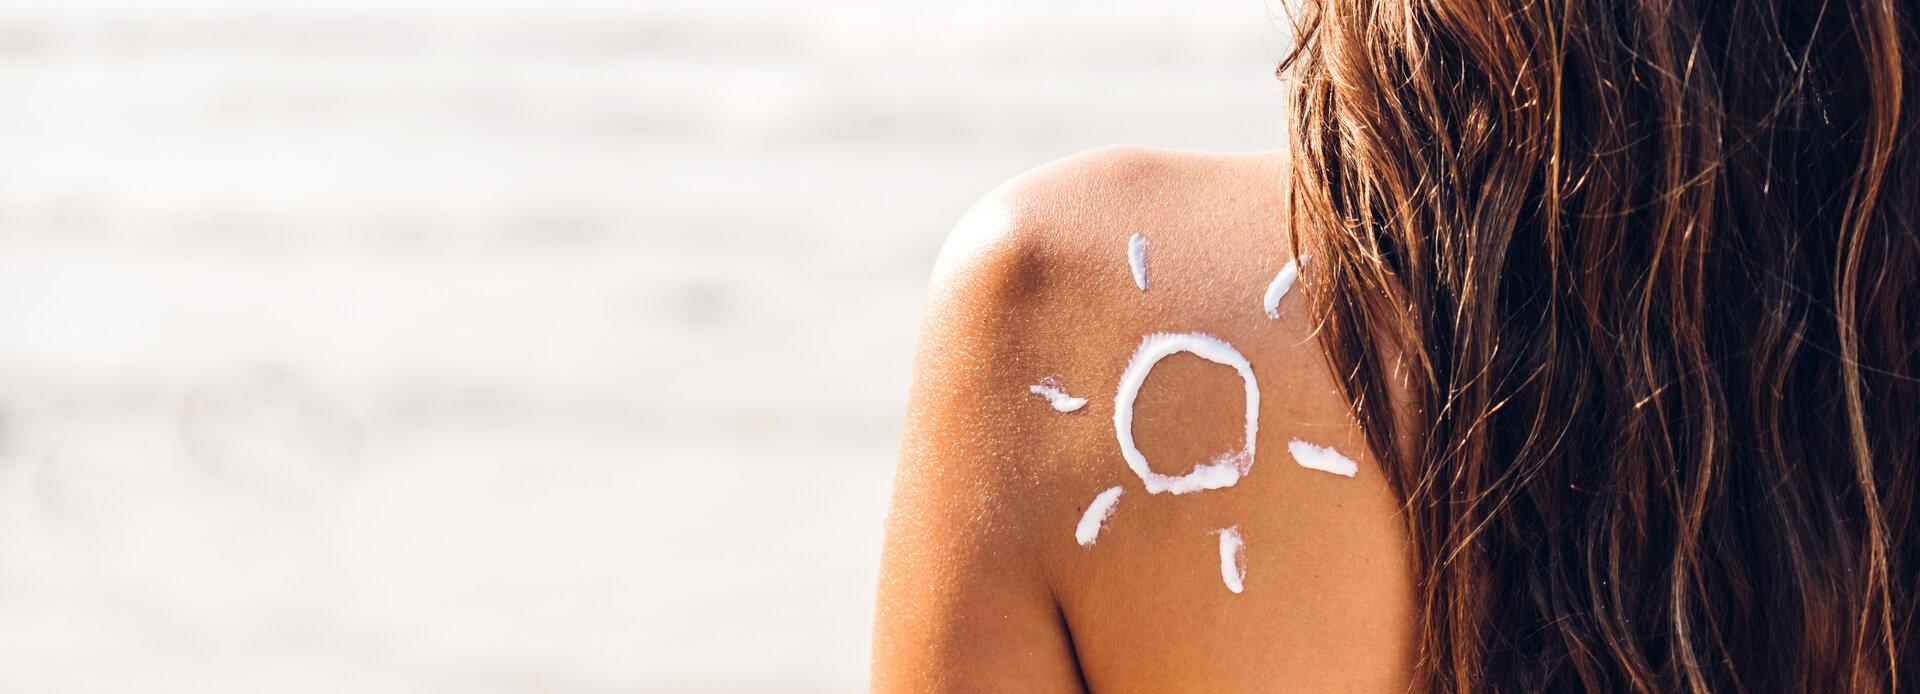 Frau im zweiteiligen Bikini trägt Sonnencreme auf und wird von der Sonne gezeichnet